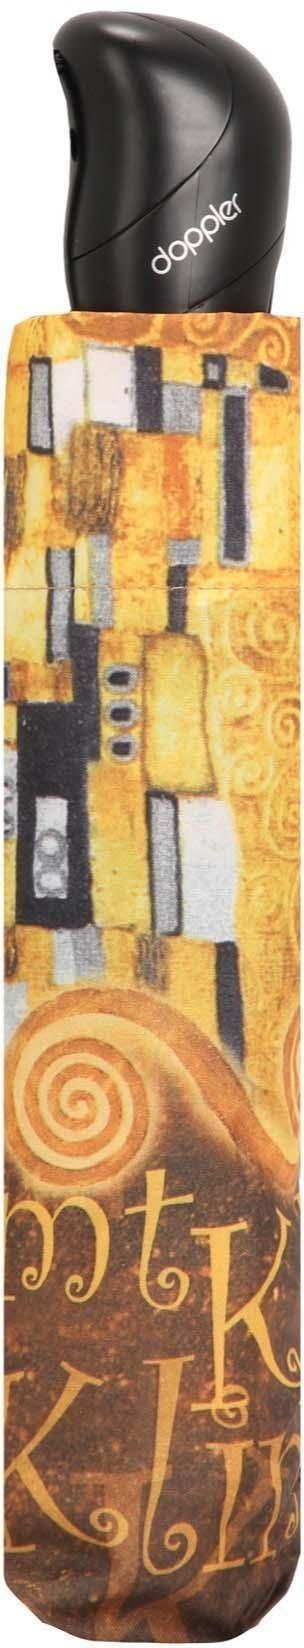 doppler® Taschenregenschirm Klimt Collection Art Magic Mini, UV-Schutz mit Kuss, Der